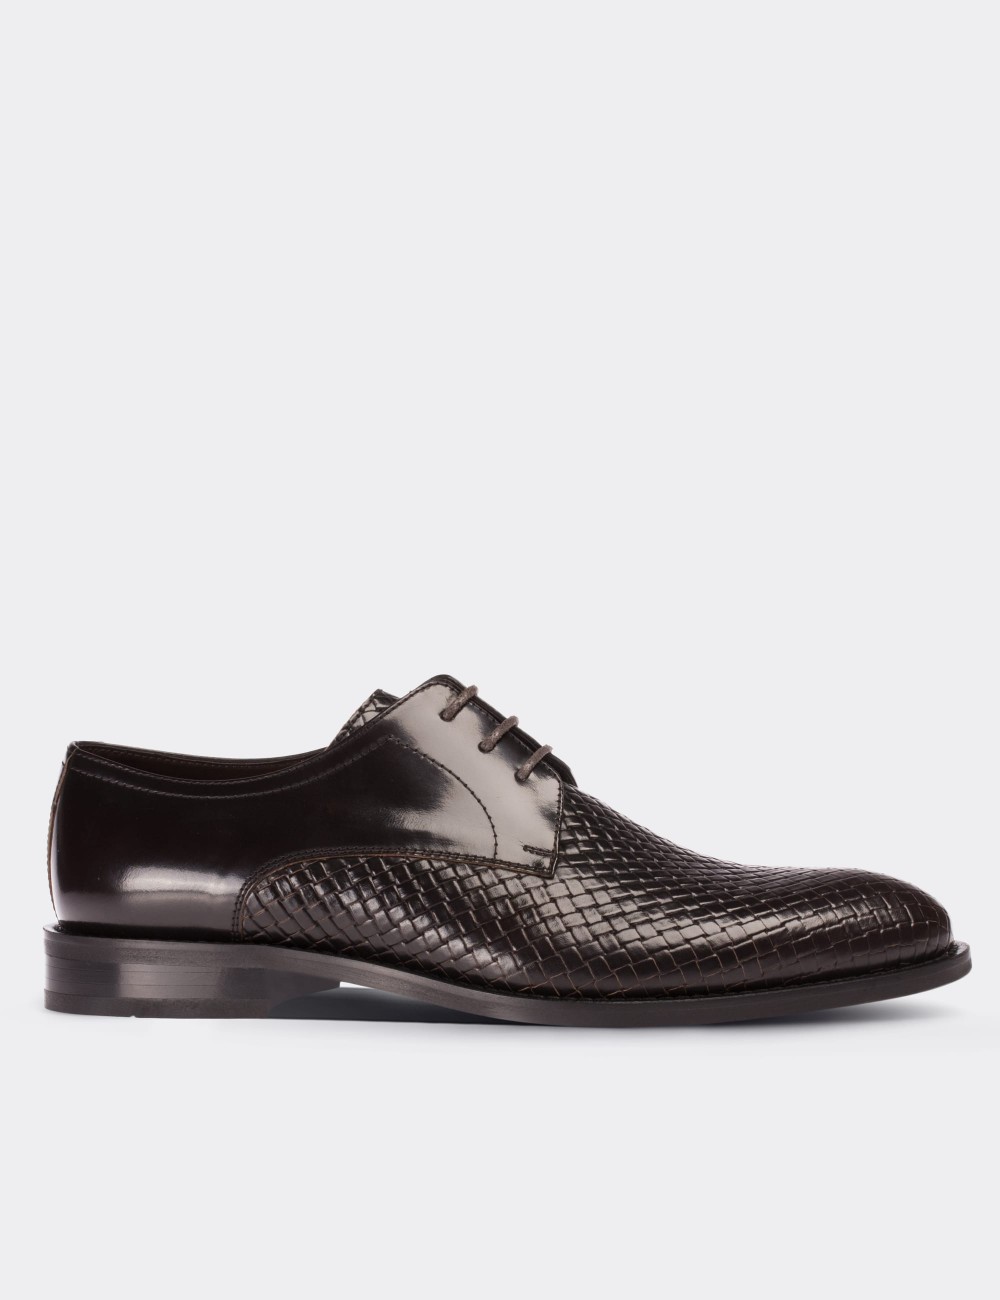 Hakiki Deri Bordo Klasik Erkek Ayakkabı - 00479MBRDM01